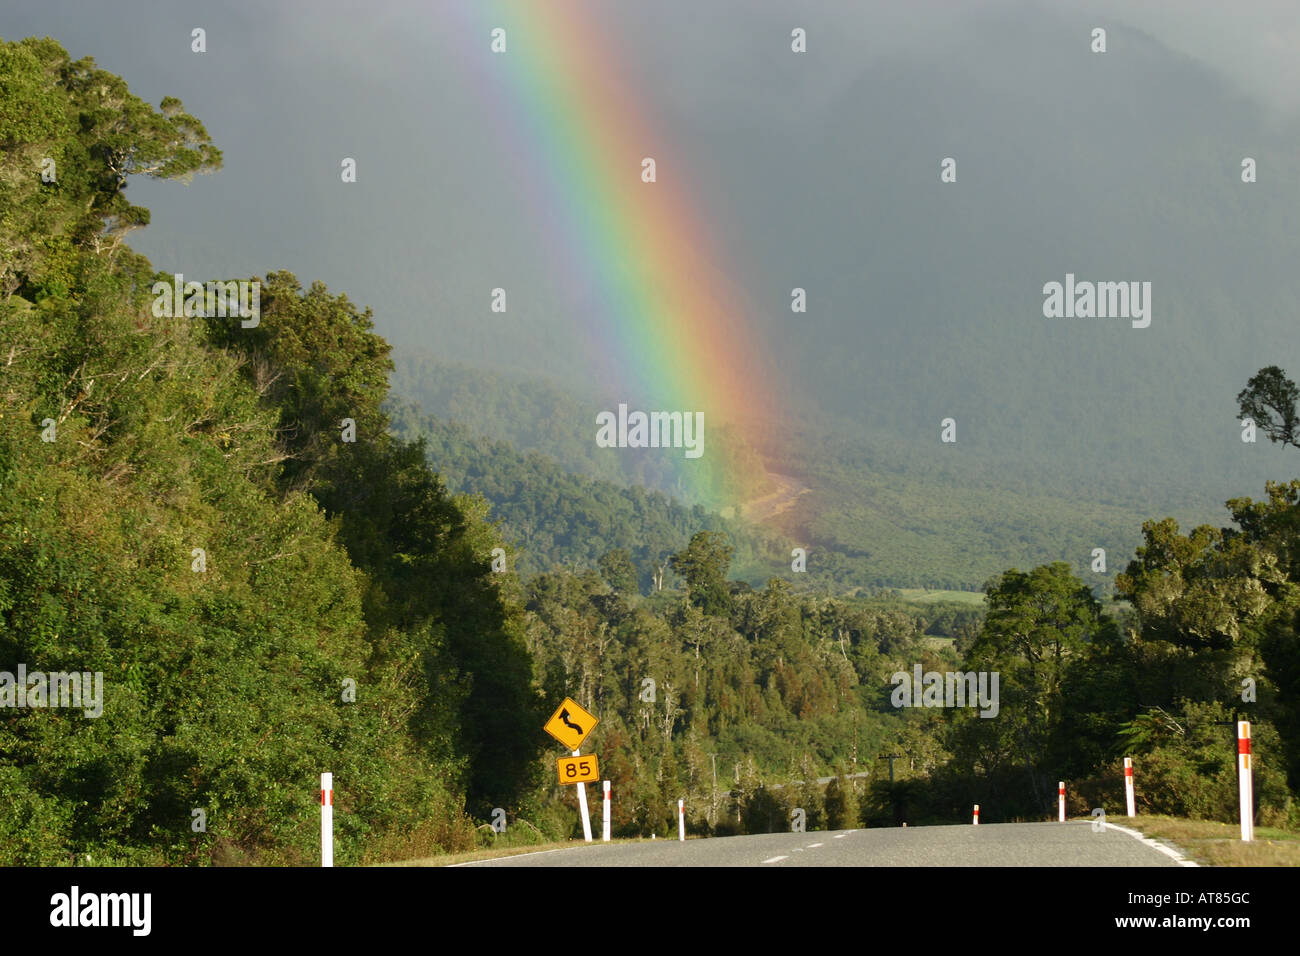 Buscar la olla de oro al final del arco iris, sobre una calle tranquila en la Isla del Sur, Nueva Zelanda Foto de stock